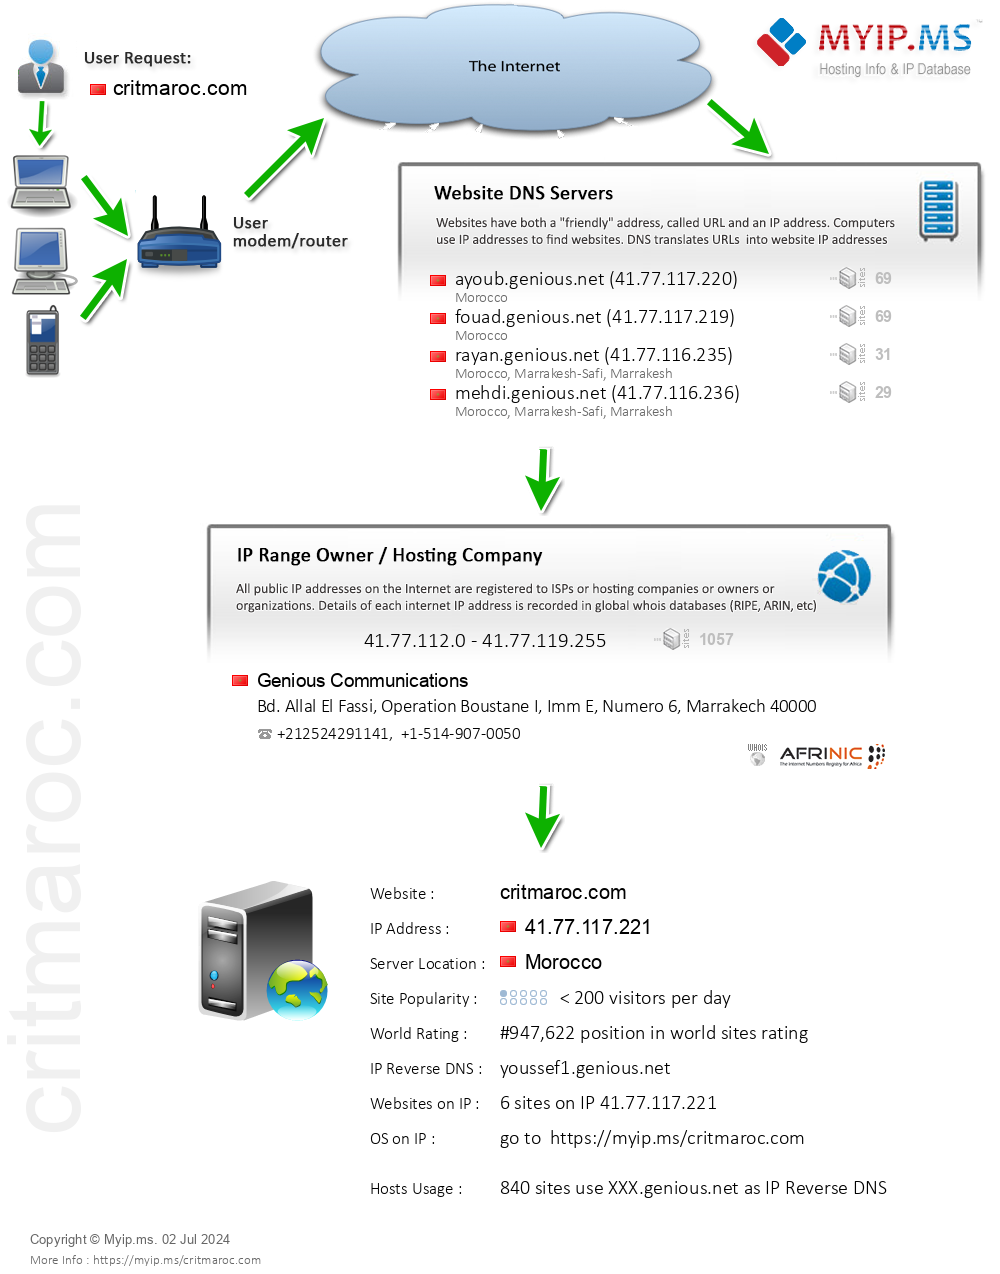 Critmaroc.com - Website Hosting Visual IP Diagram